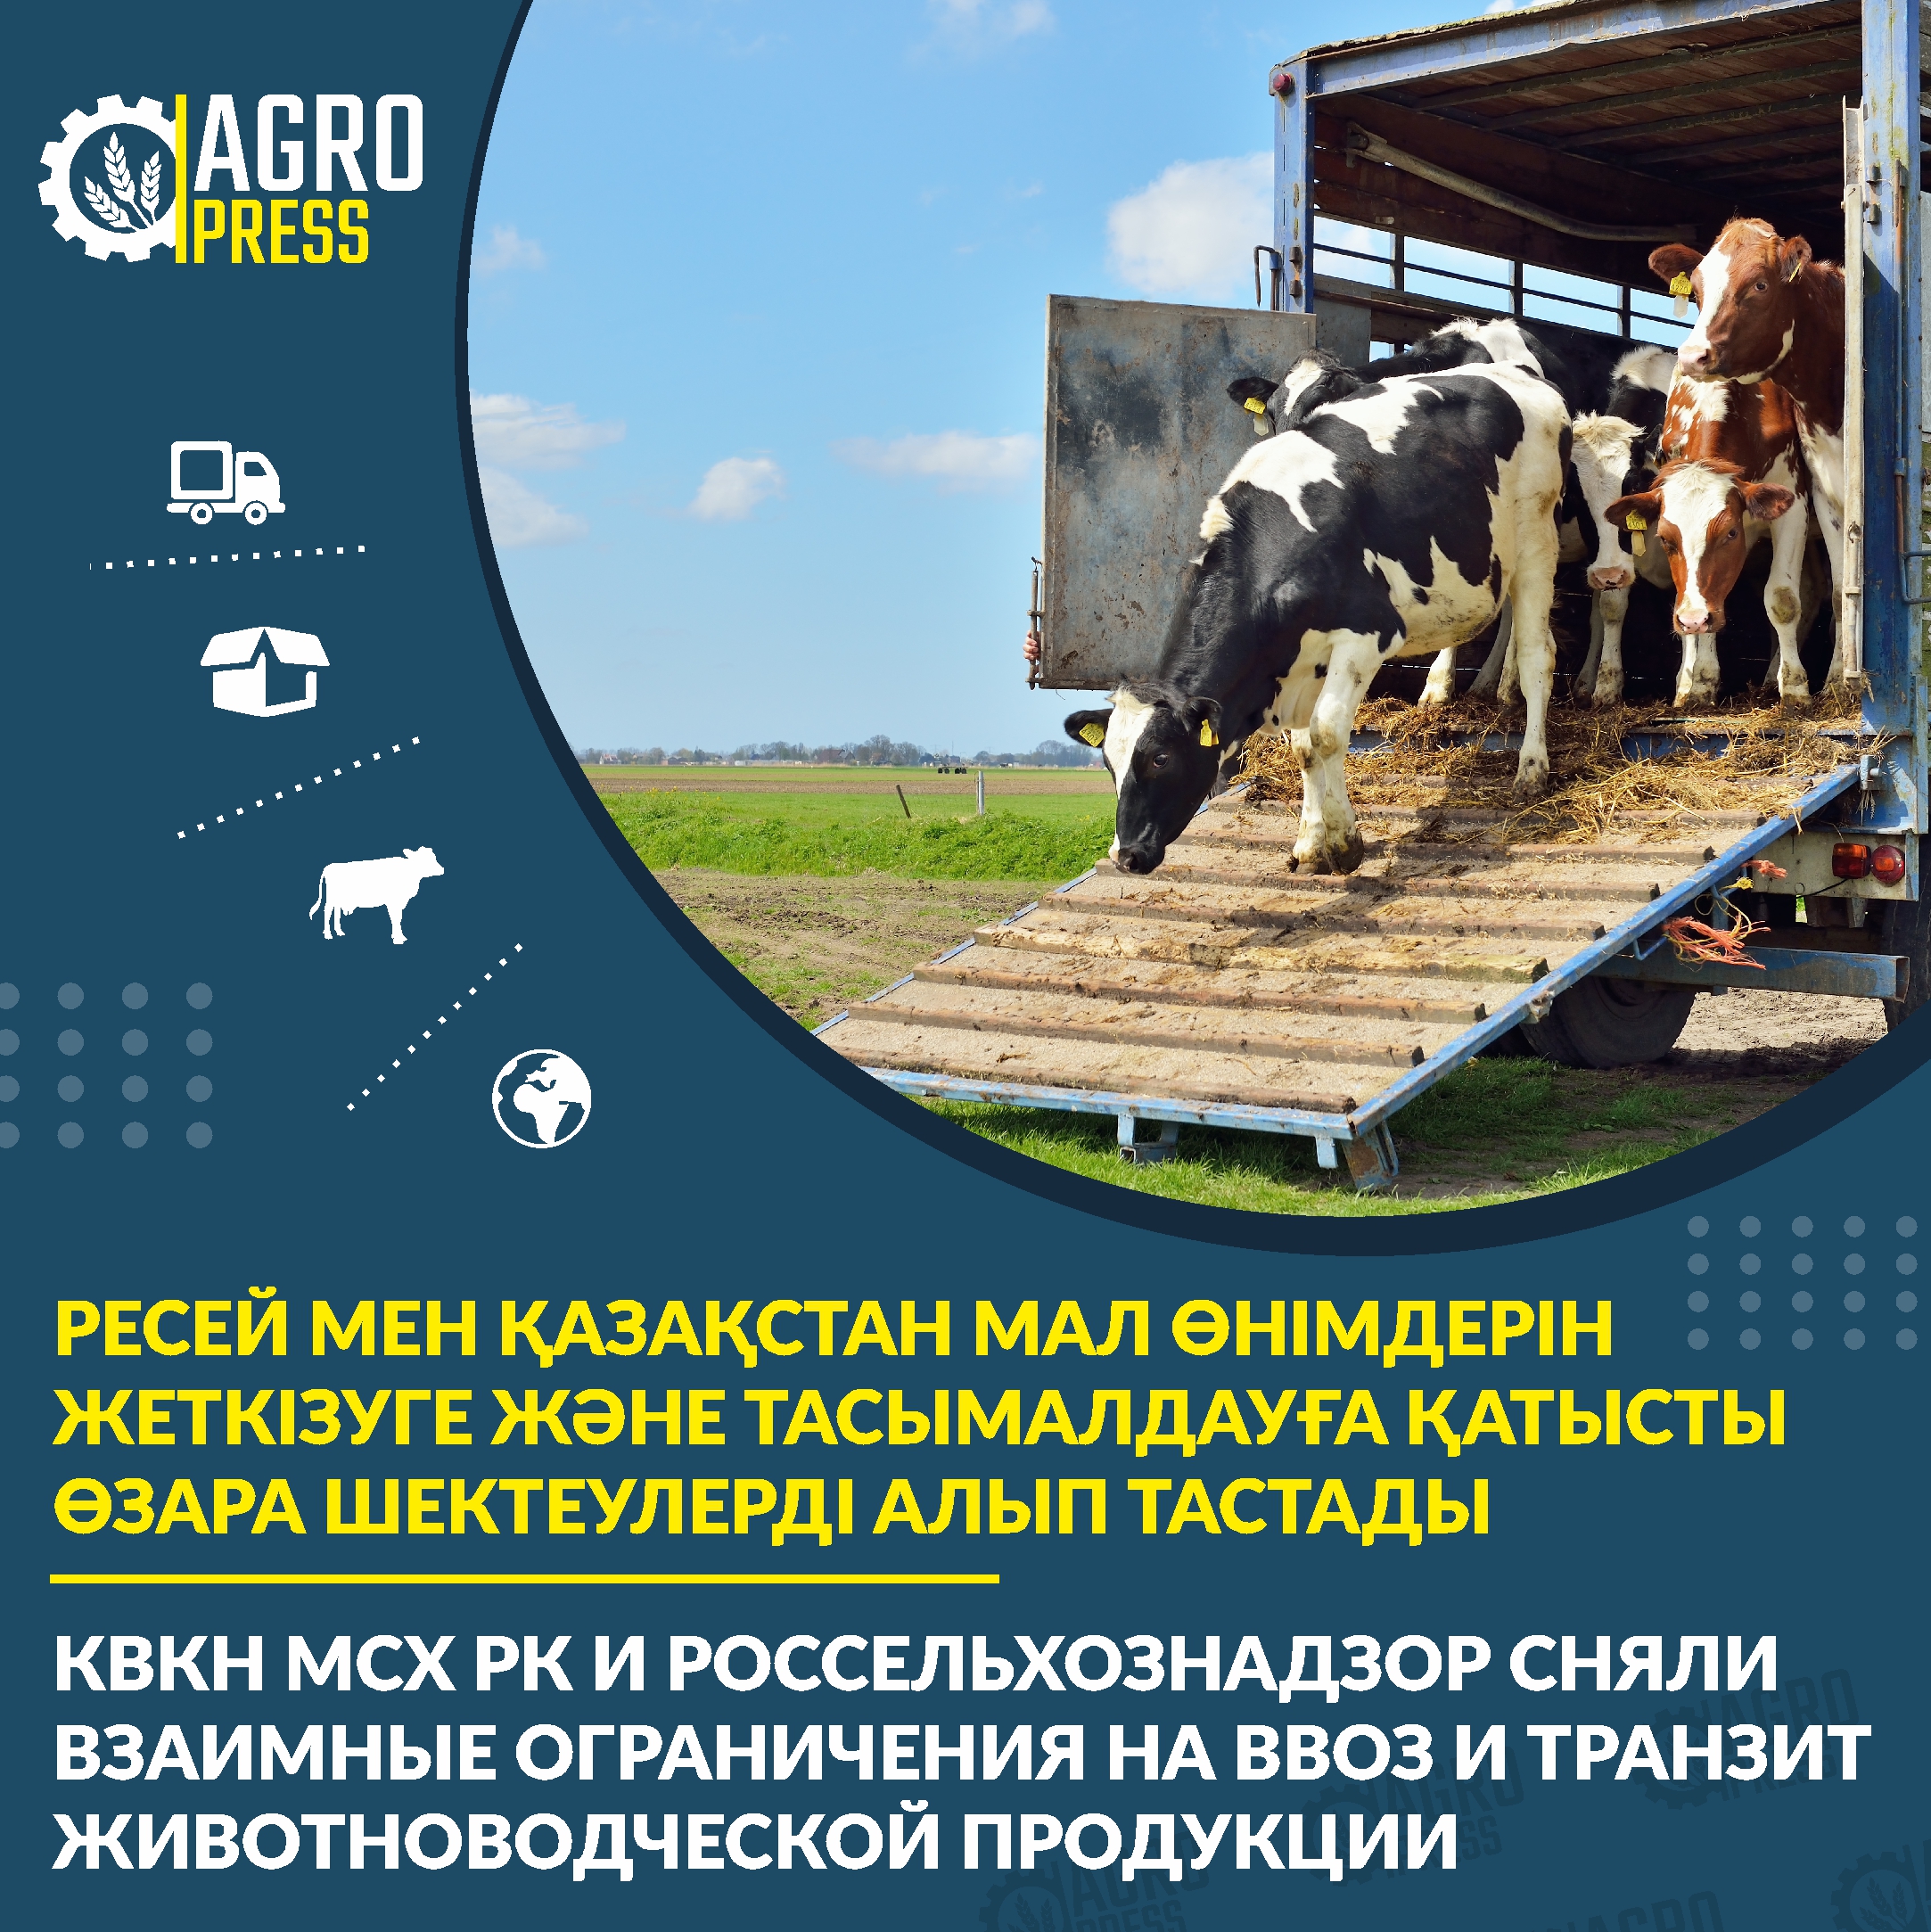 КВКН МСХ РК и Россельхознадзор сняли взаимные ограничения на ввоз и транзит животноводческой продукции